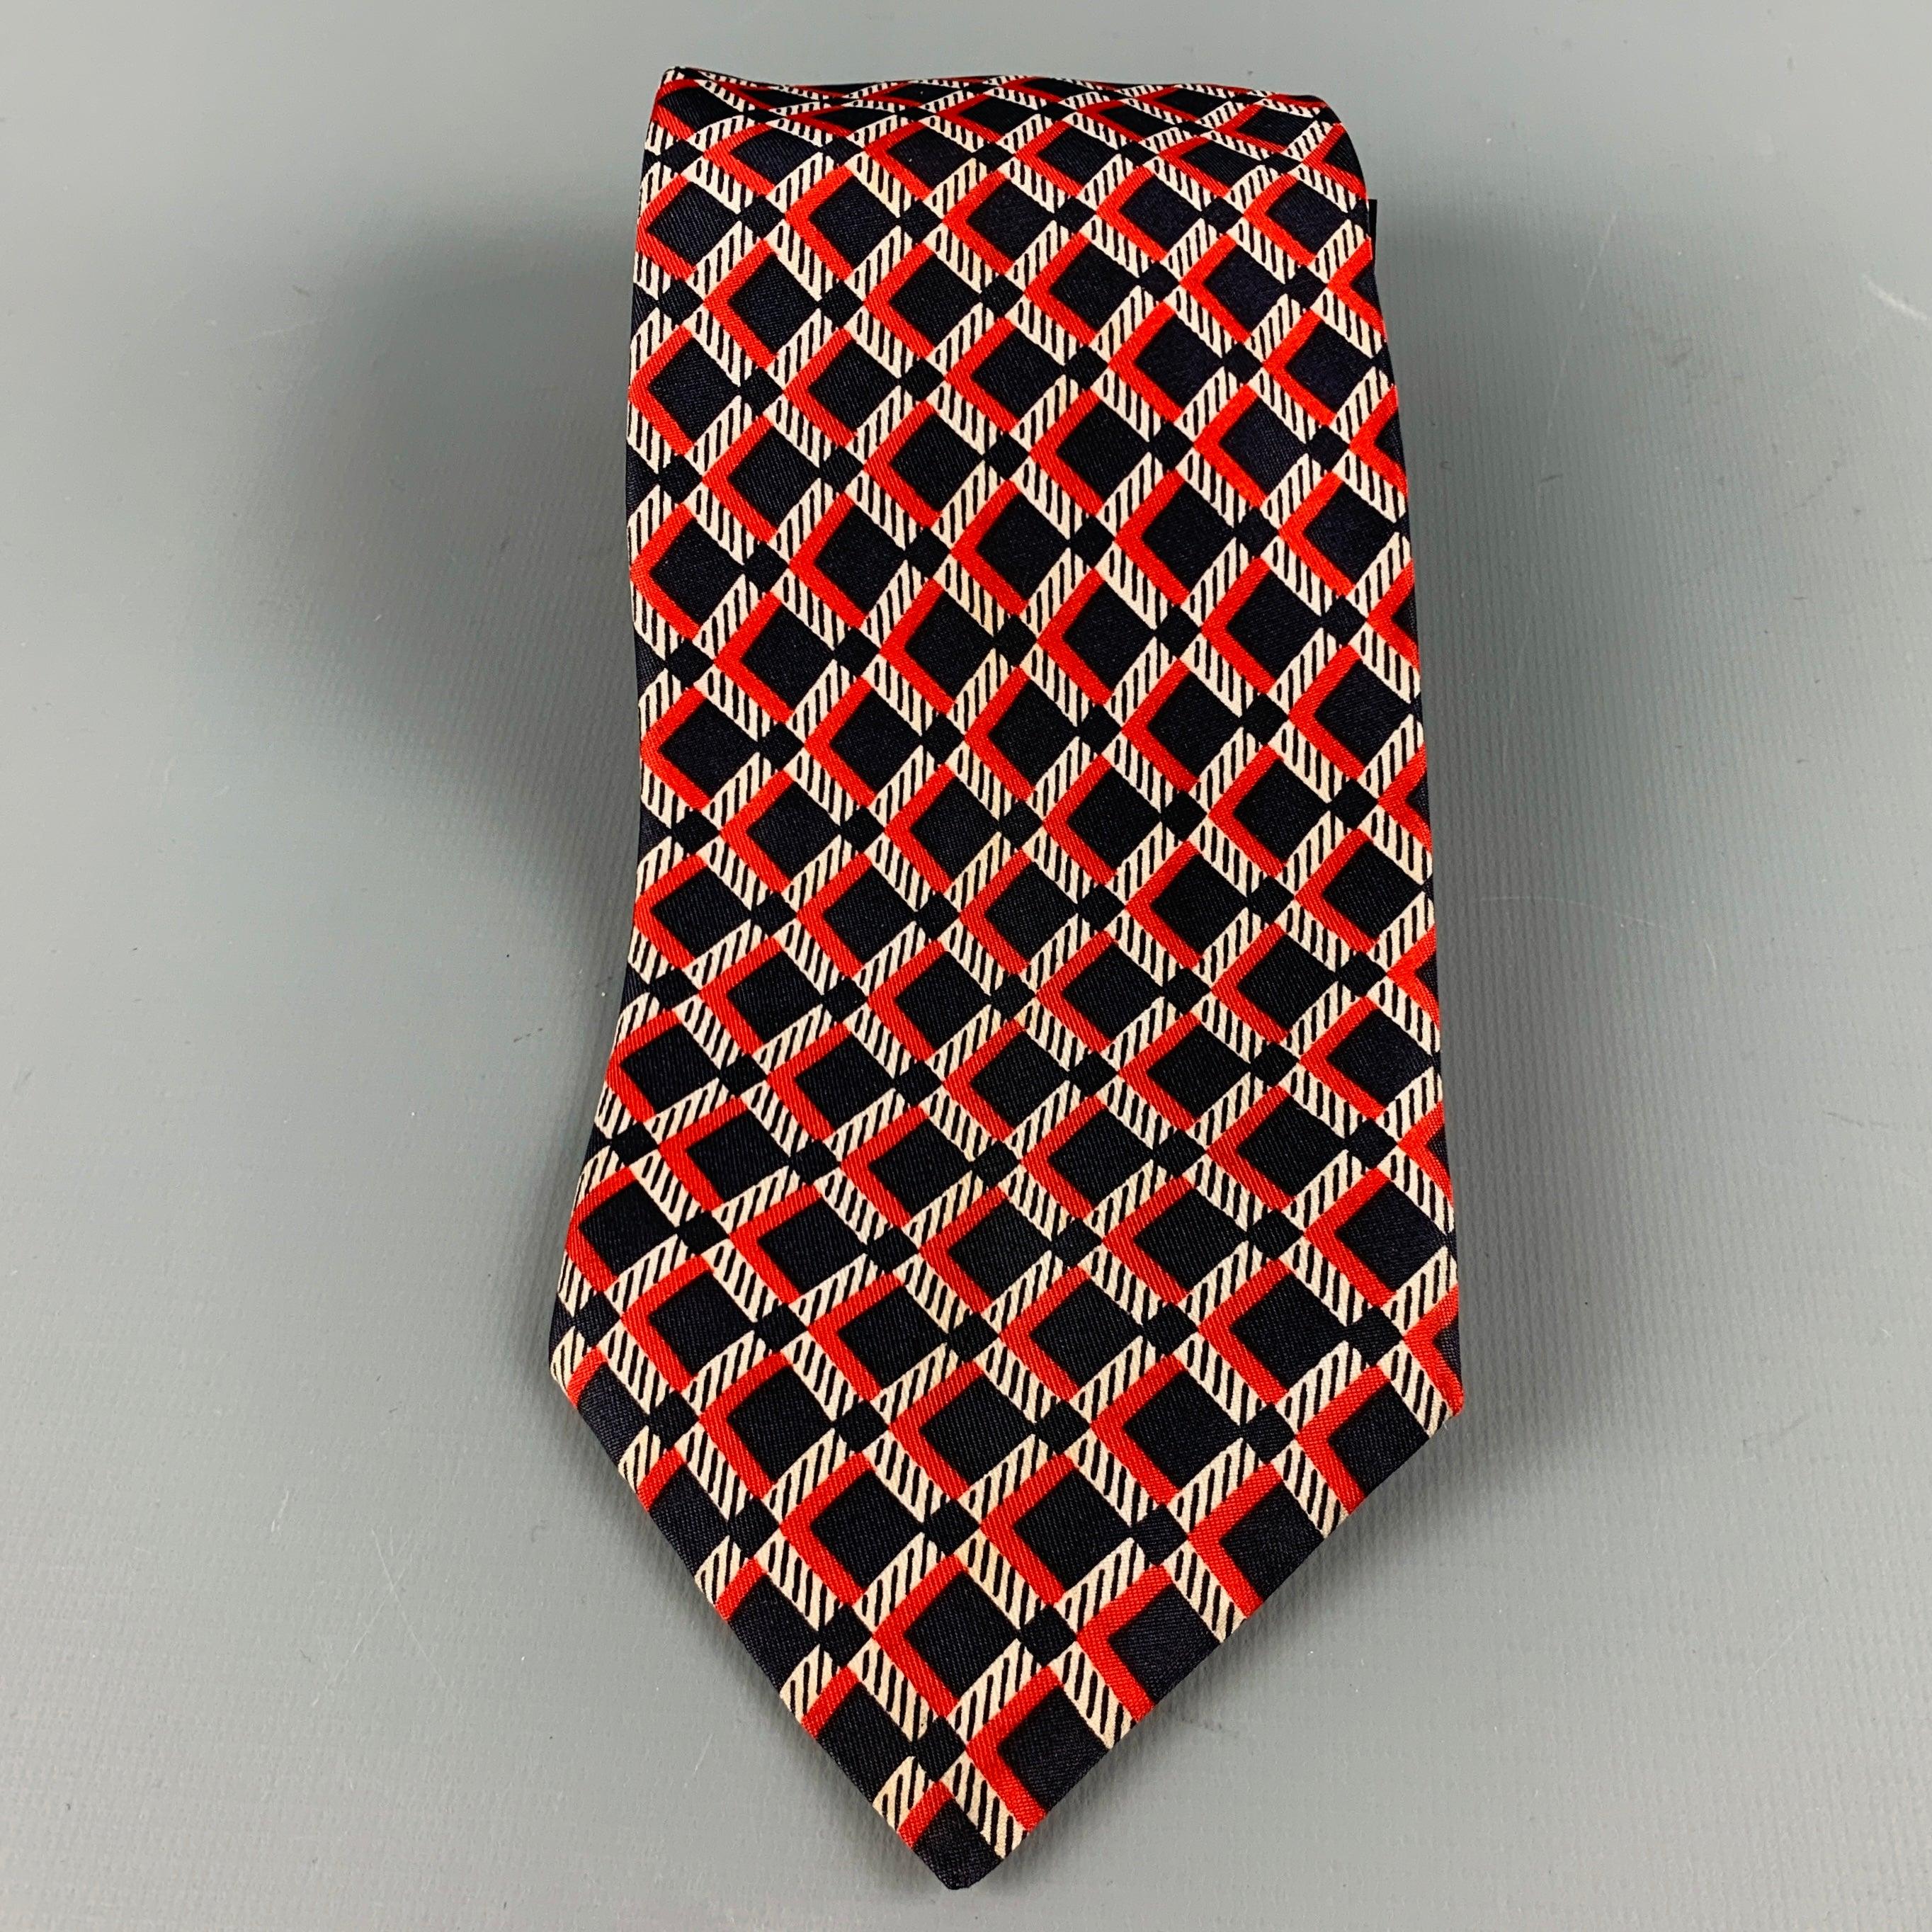 VALENTINO
Cravate en soie marine et rouge à motifs de carreaux. Fabriqué en Italie. Excellent état. 

Mesures : 
  Largeur : 3,5 pouces Longueur : 54 pouces 
  
  
 
Numéro de référence : 128756
Catégorie : Cravate
Plus de détails
    
Marque : 